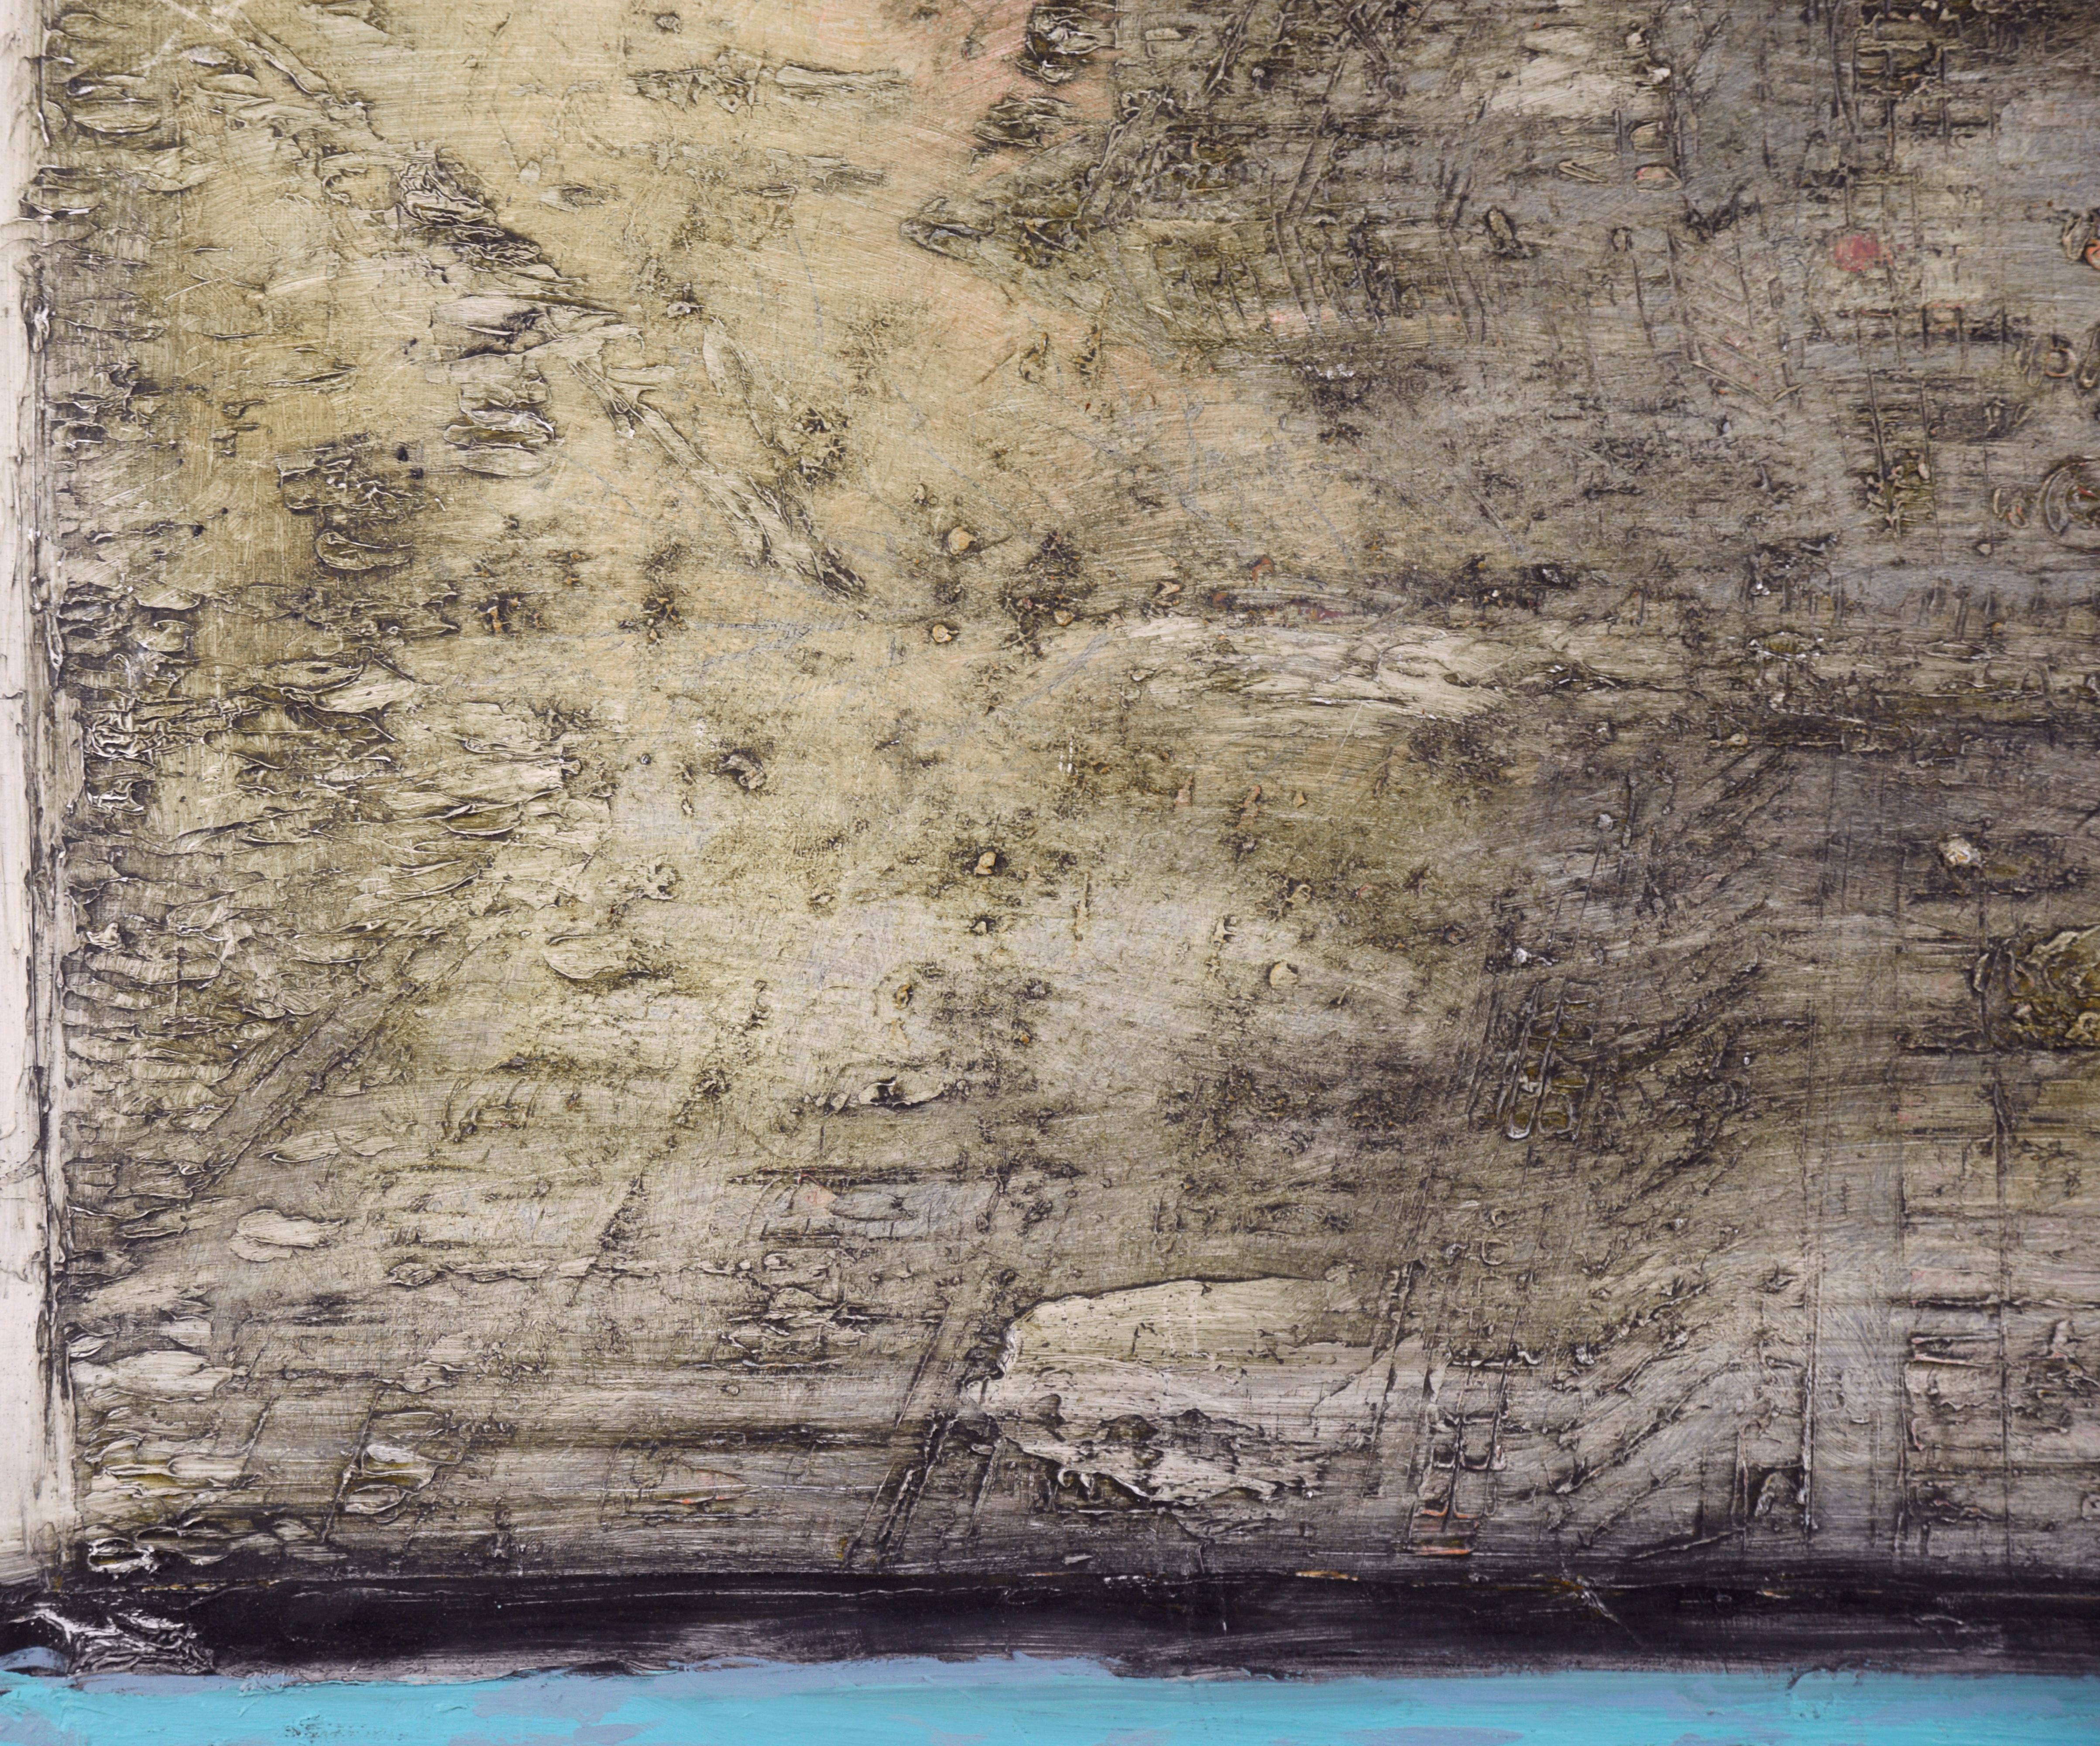 Auffälliges abstraktes Farbfeld-Ölgemälde auf Holzplatte von Michael Pauker (Amerikaner, geb. 1957). Dieses einzigartig strukturierte, zweifarbige, abstrakte Bild ist in Farbfelder aus leuchtendem Aquamarinblau unterteilt, darunter ein Bereich aus